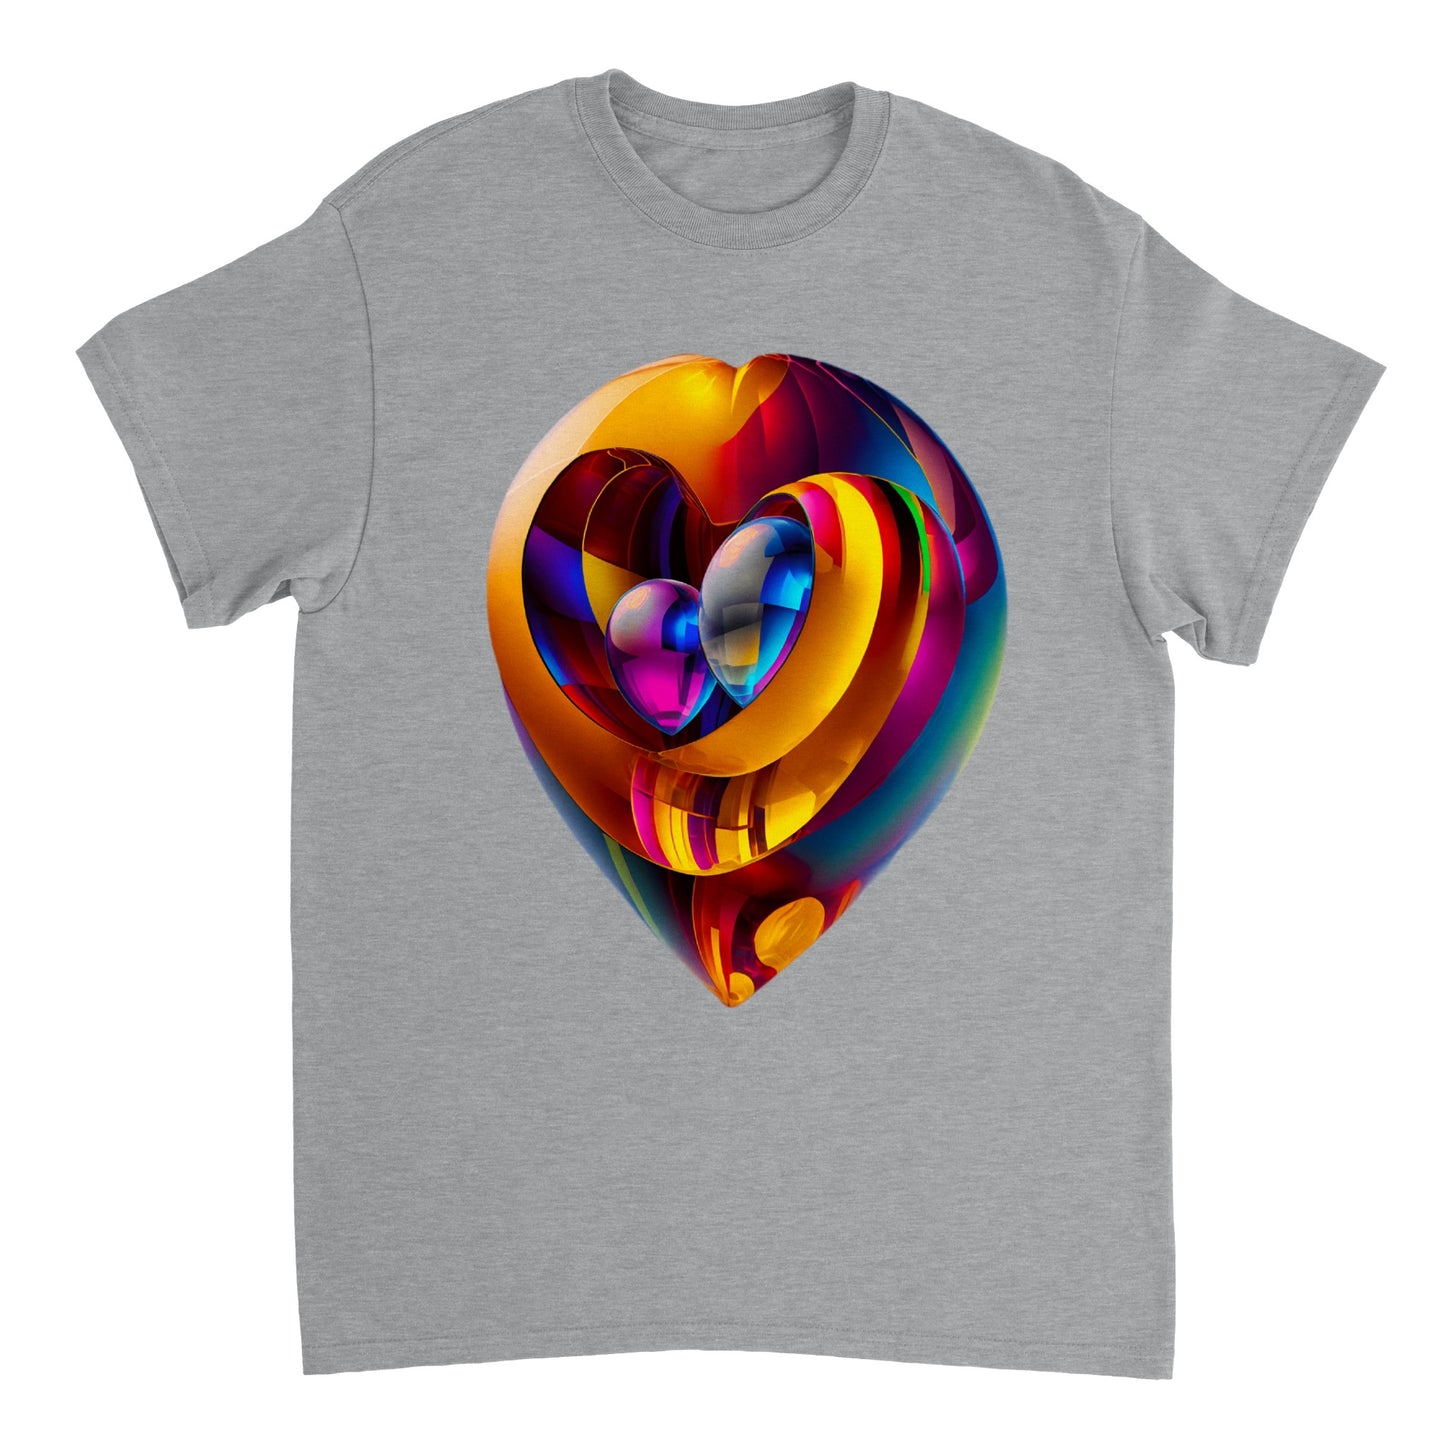 Love Heart - Heavyweight Unisex Crewneck T-shirt 45